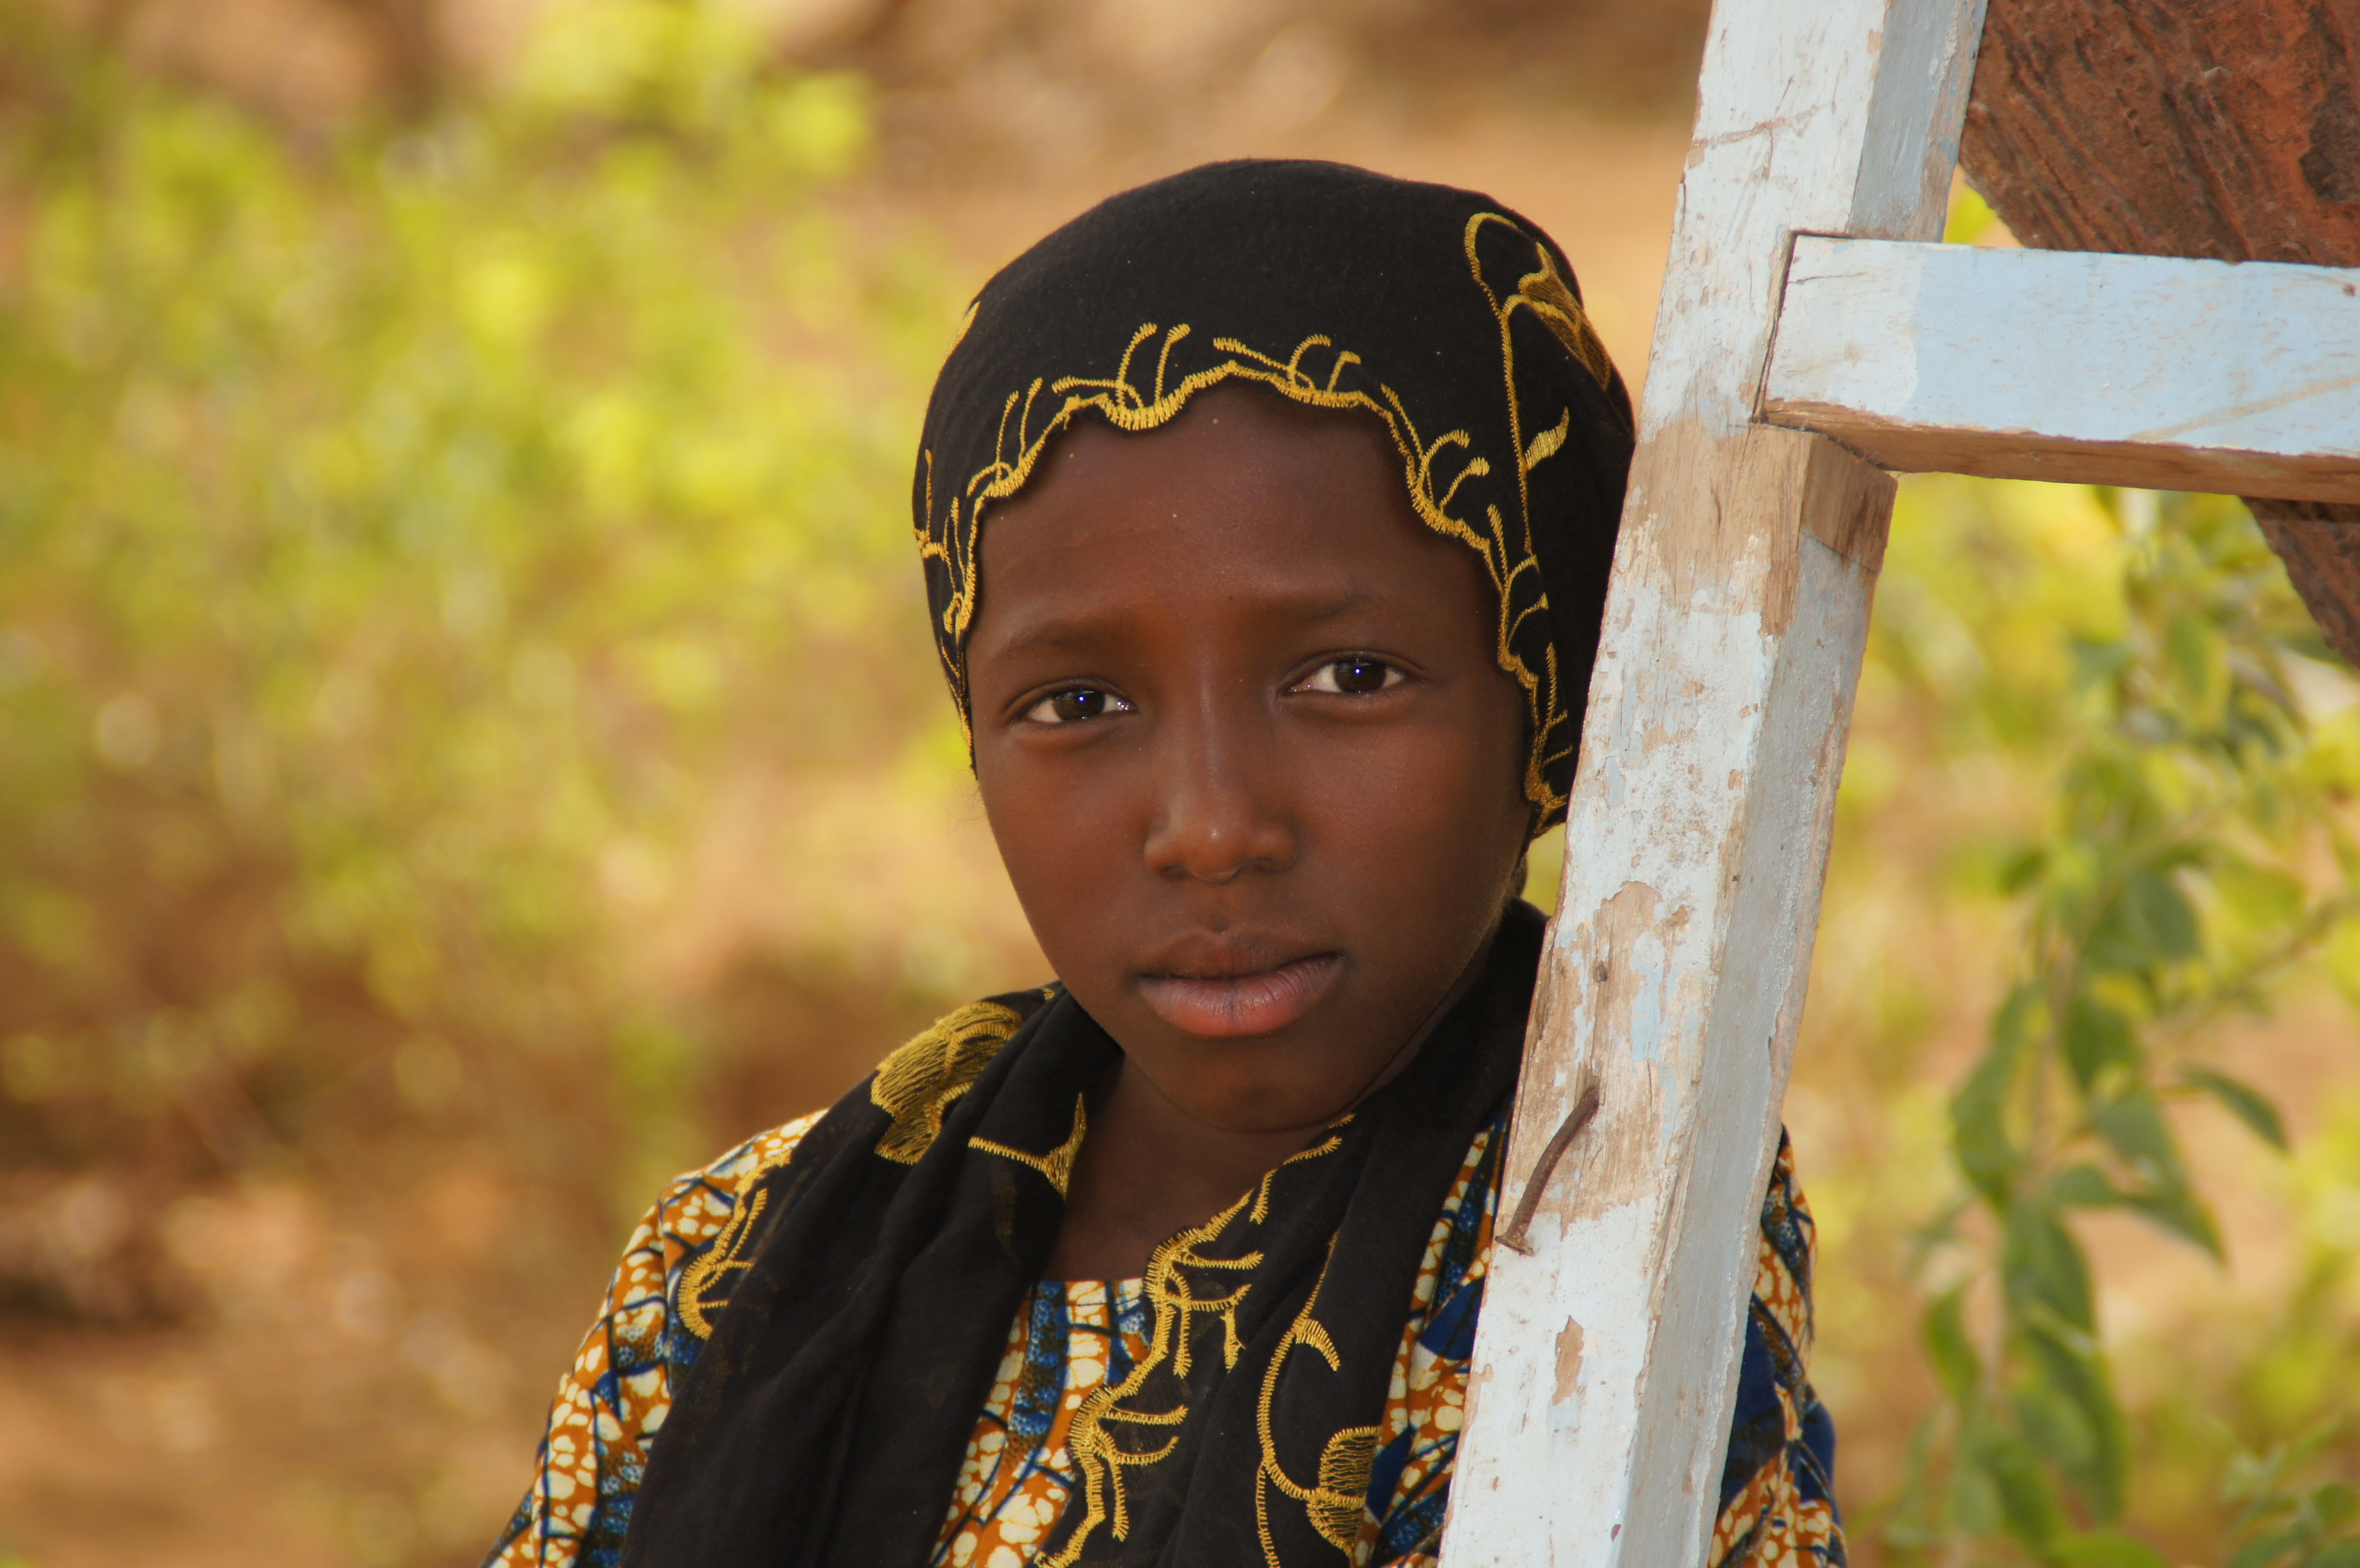 Child Marriage & FGM/C